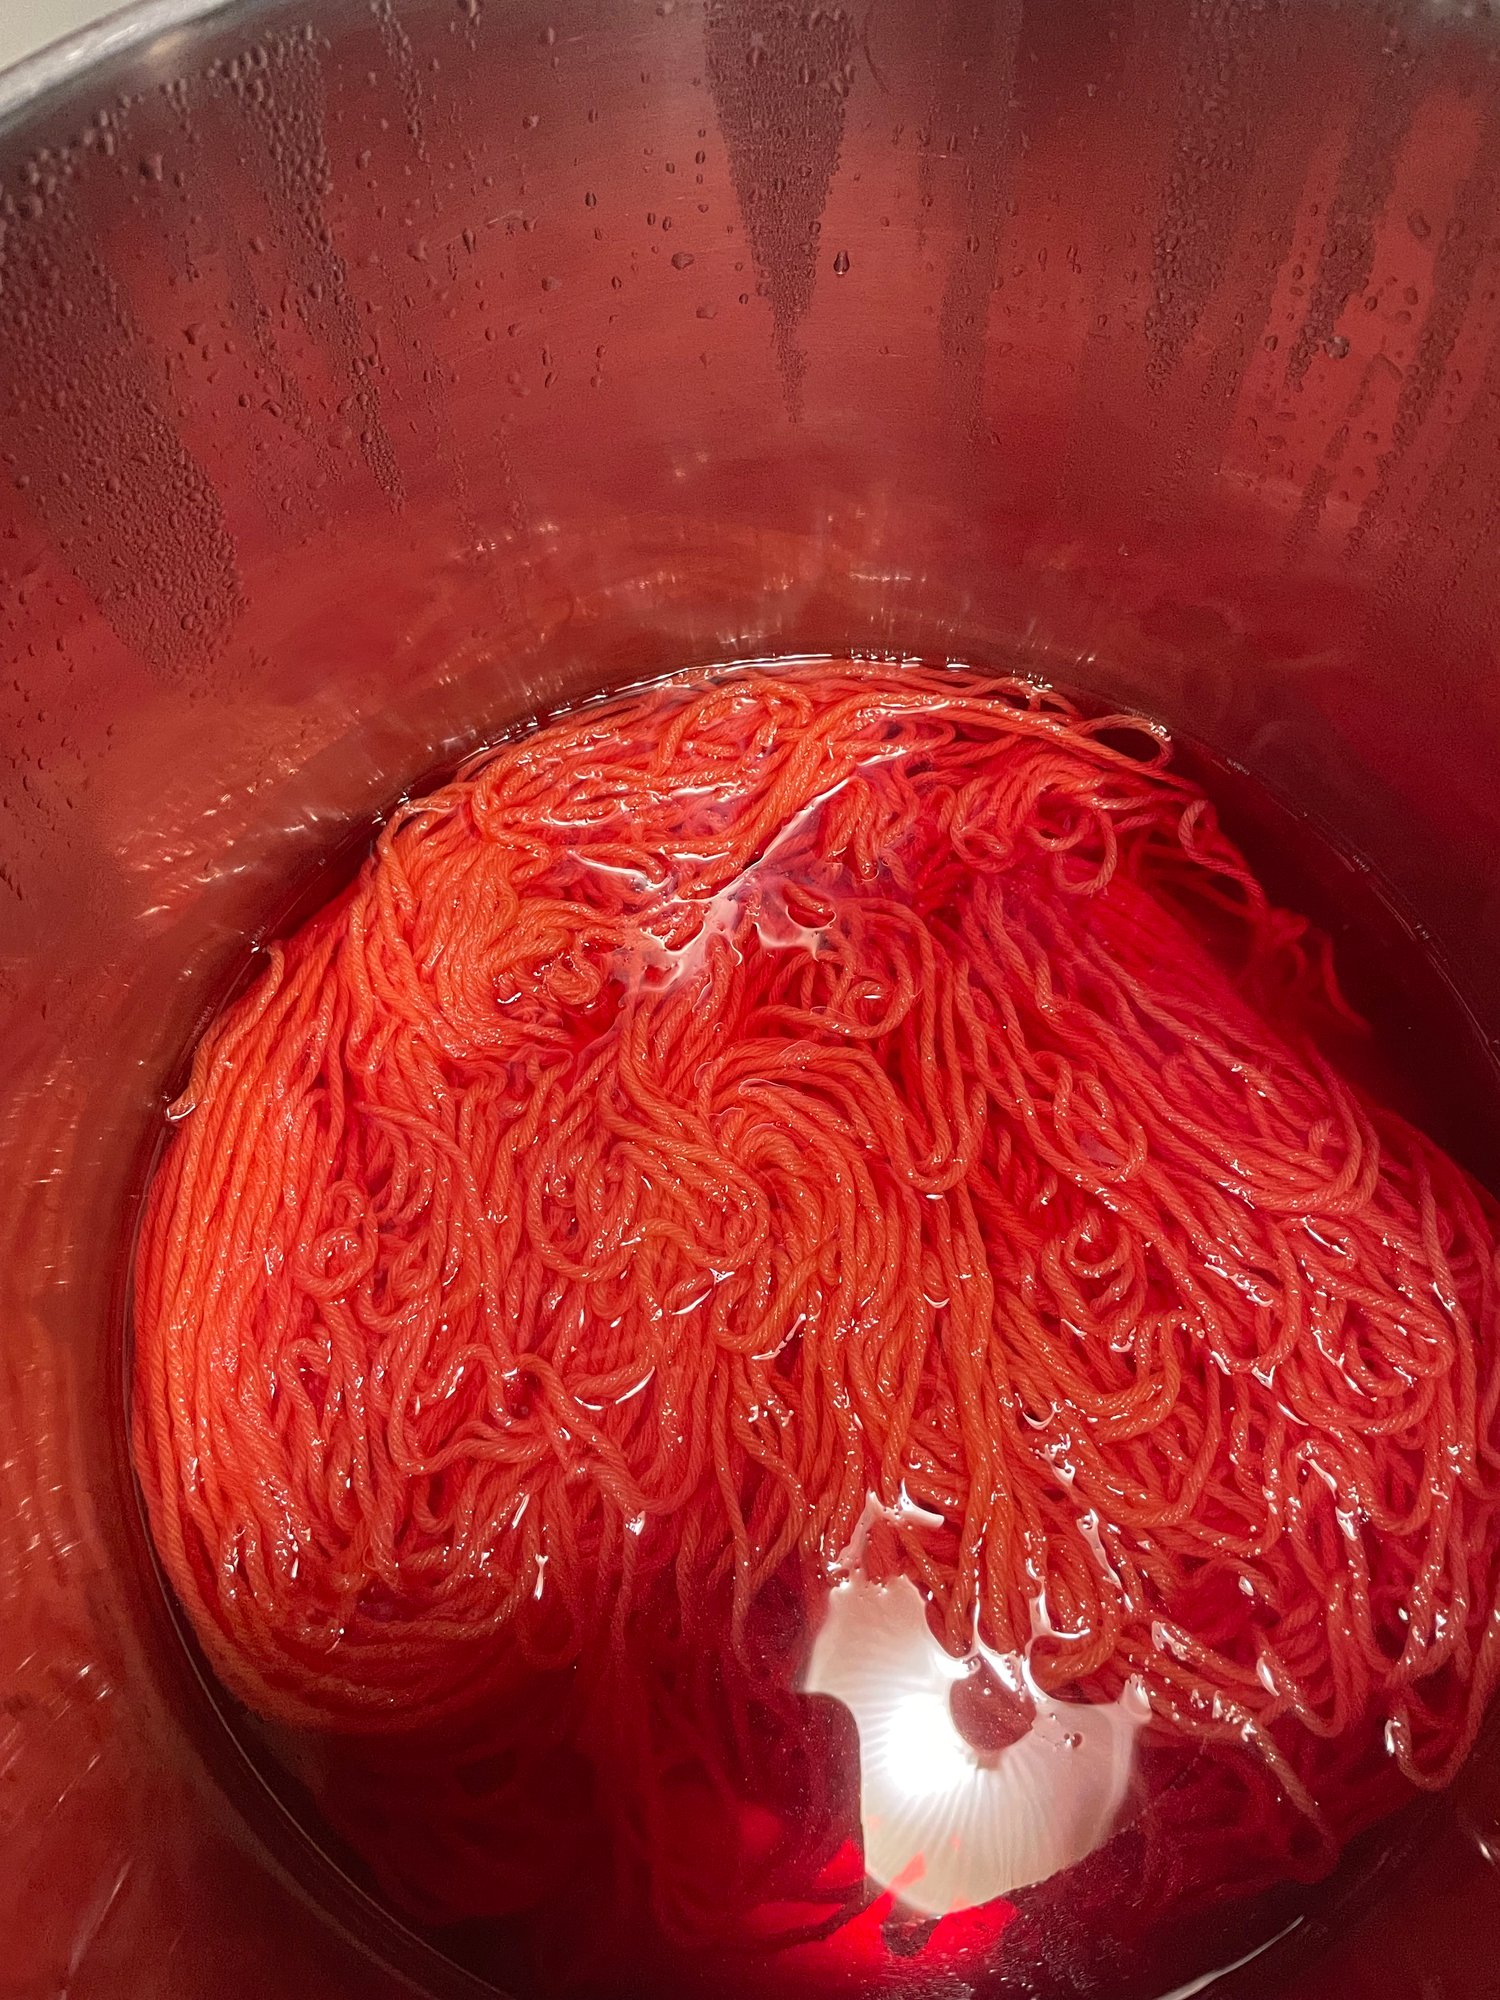 Yarn in the dye bath - currently a hot orange color